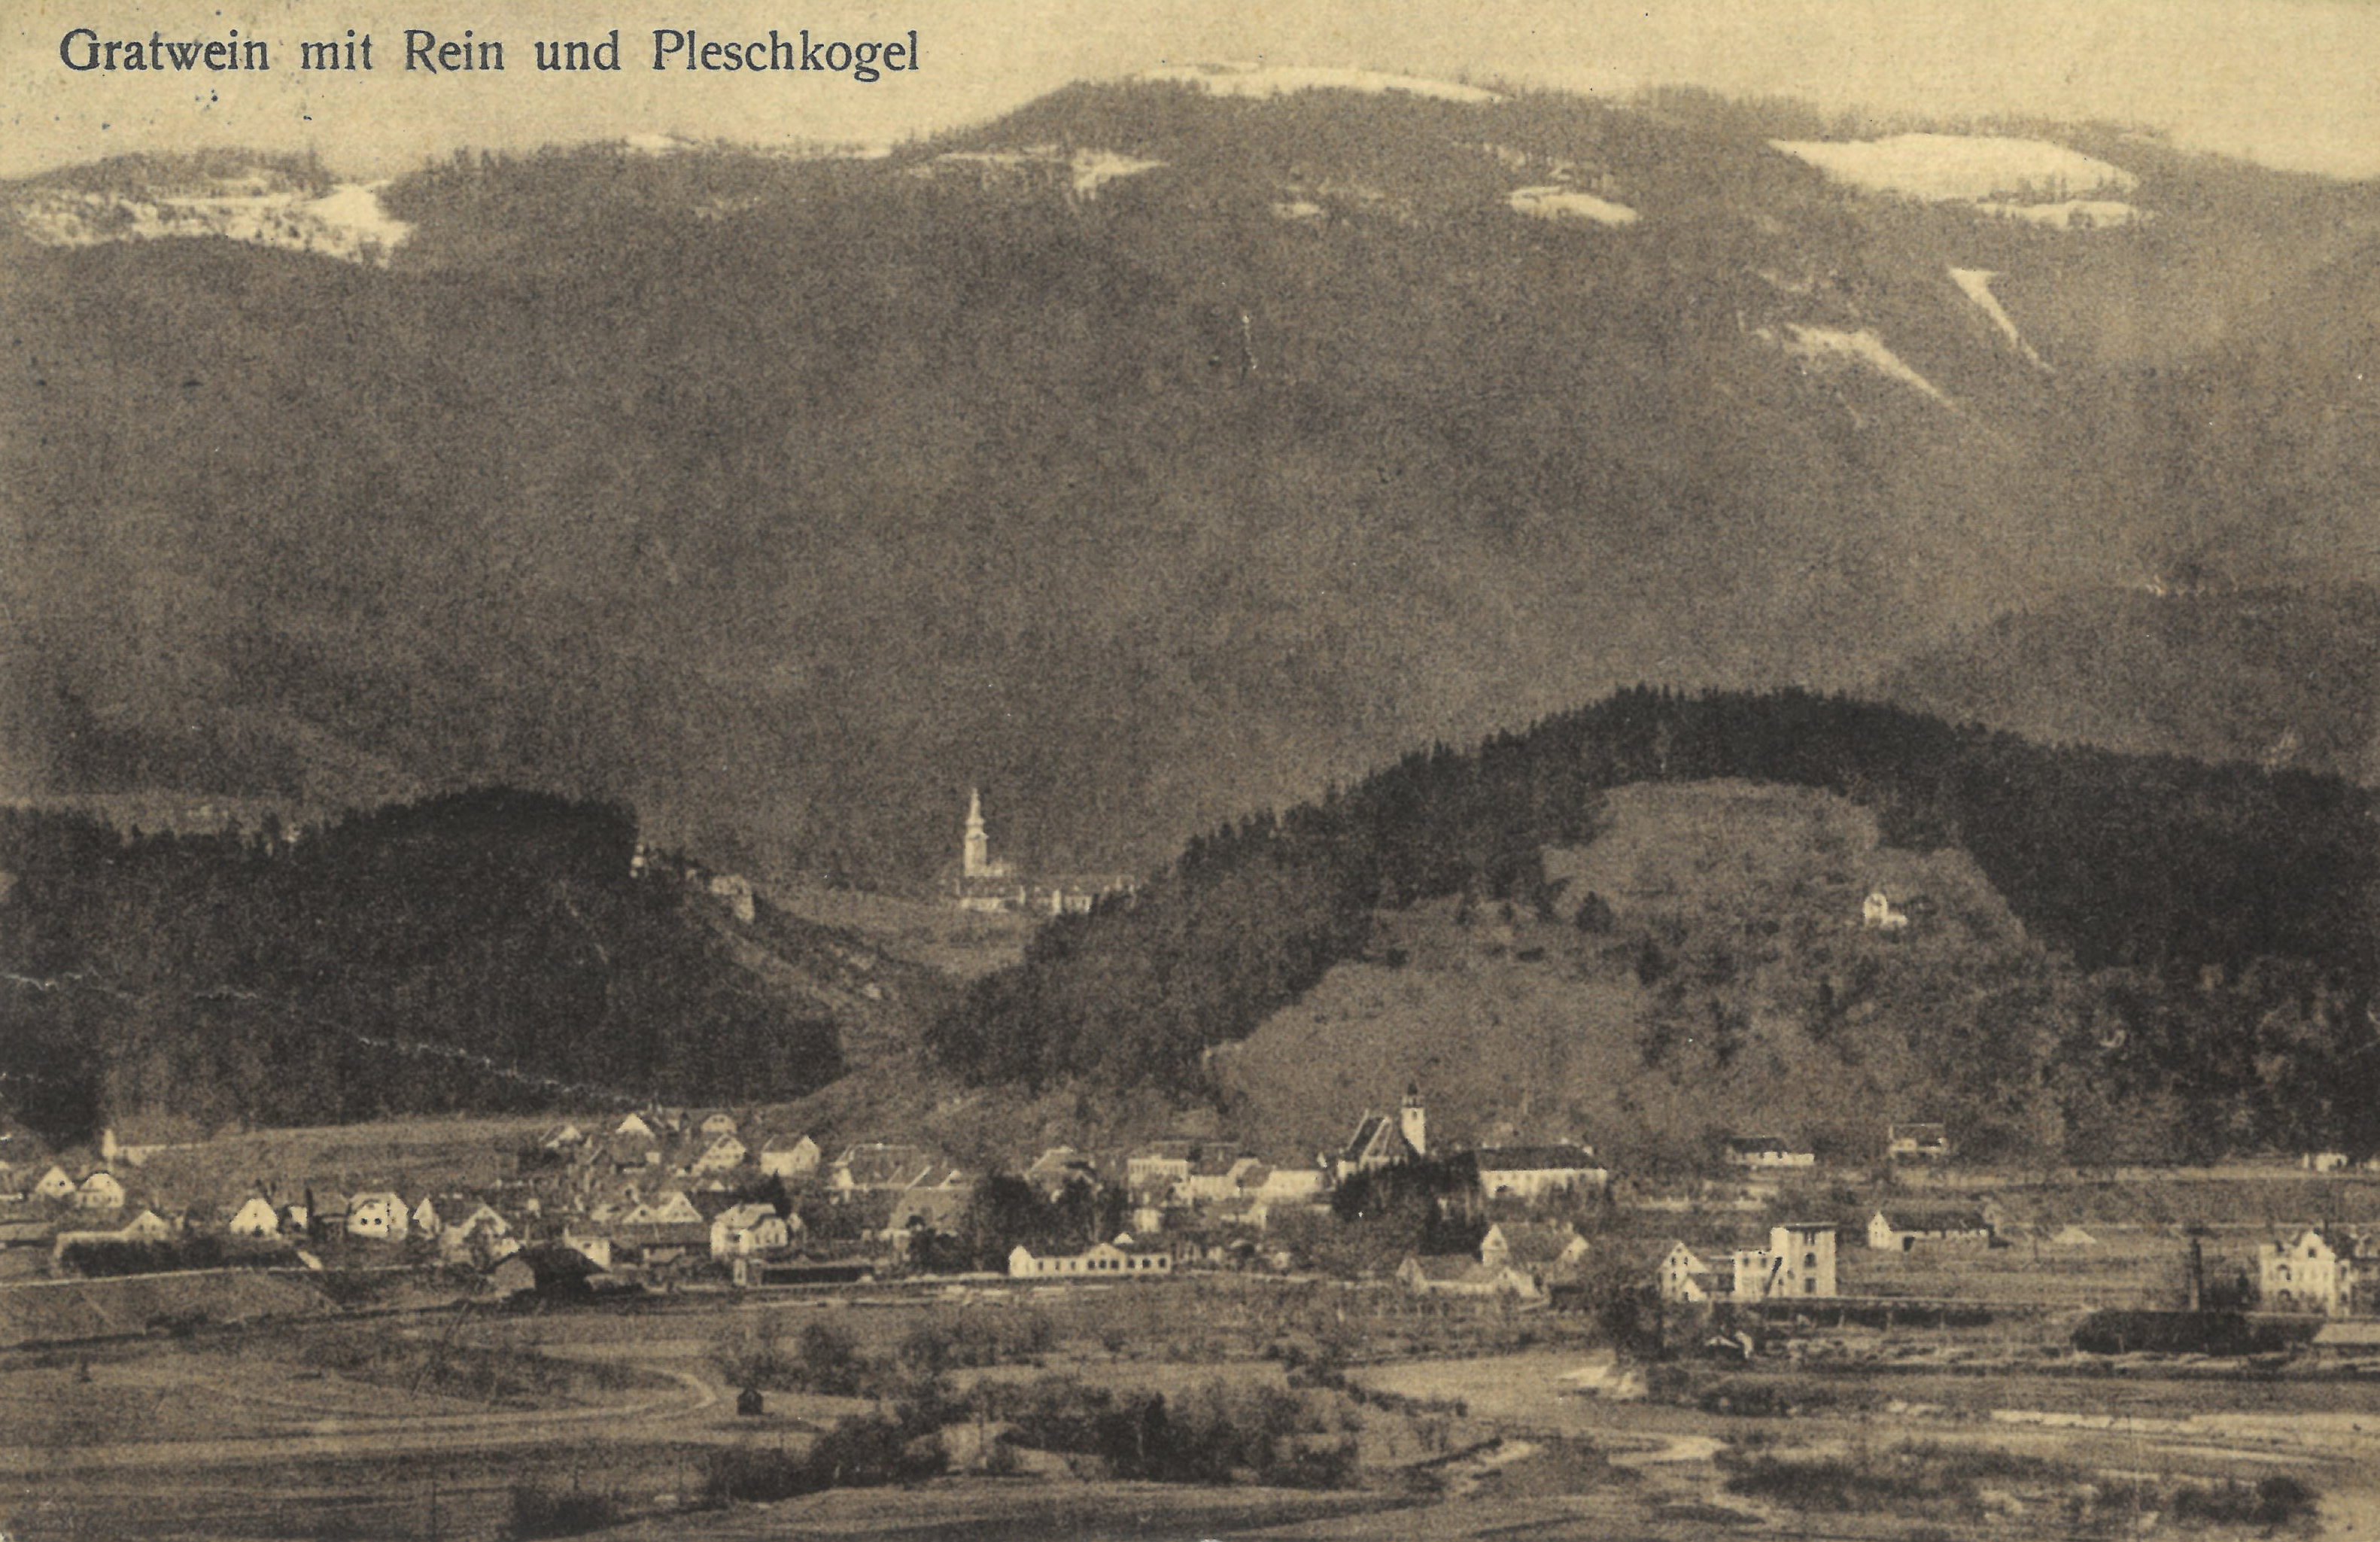 Gratwein-Straßengel, Postkarte Rein, Pleschkogel (Schweighofer)